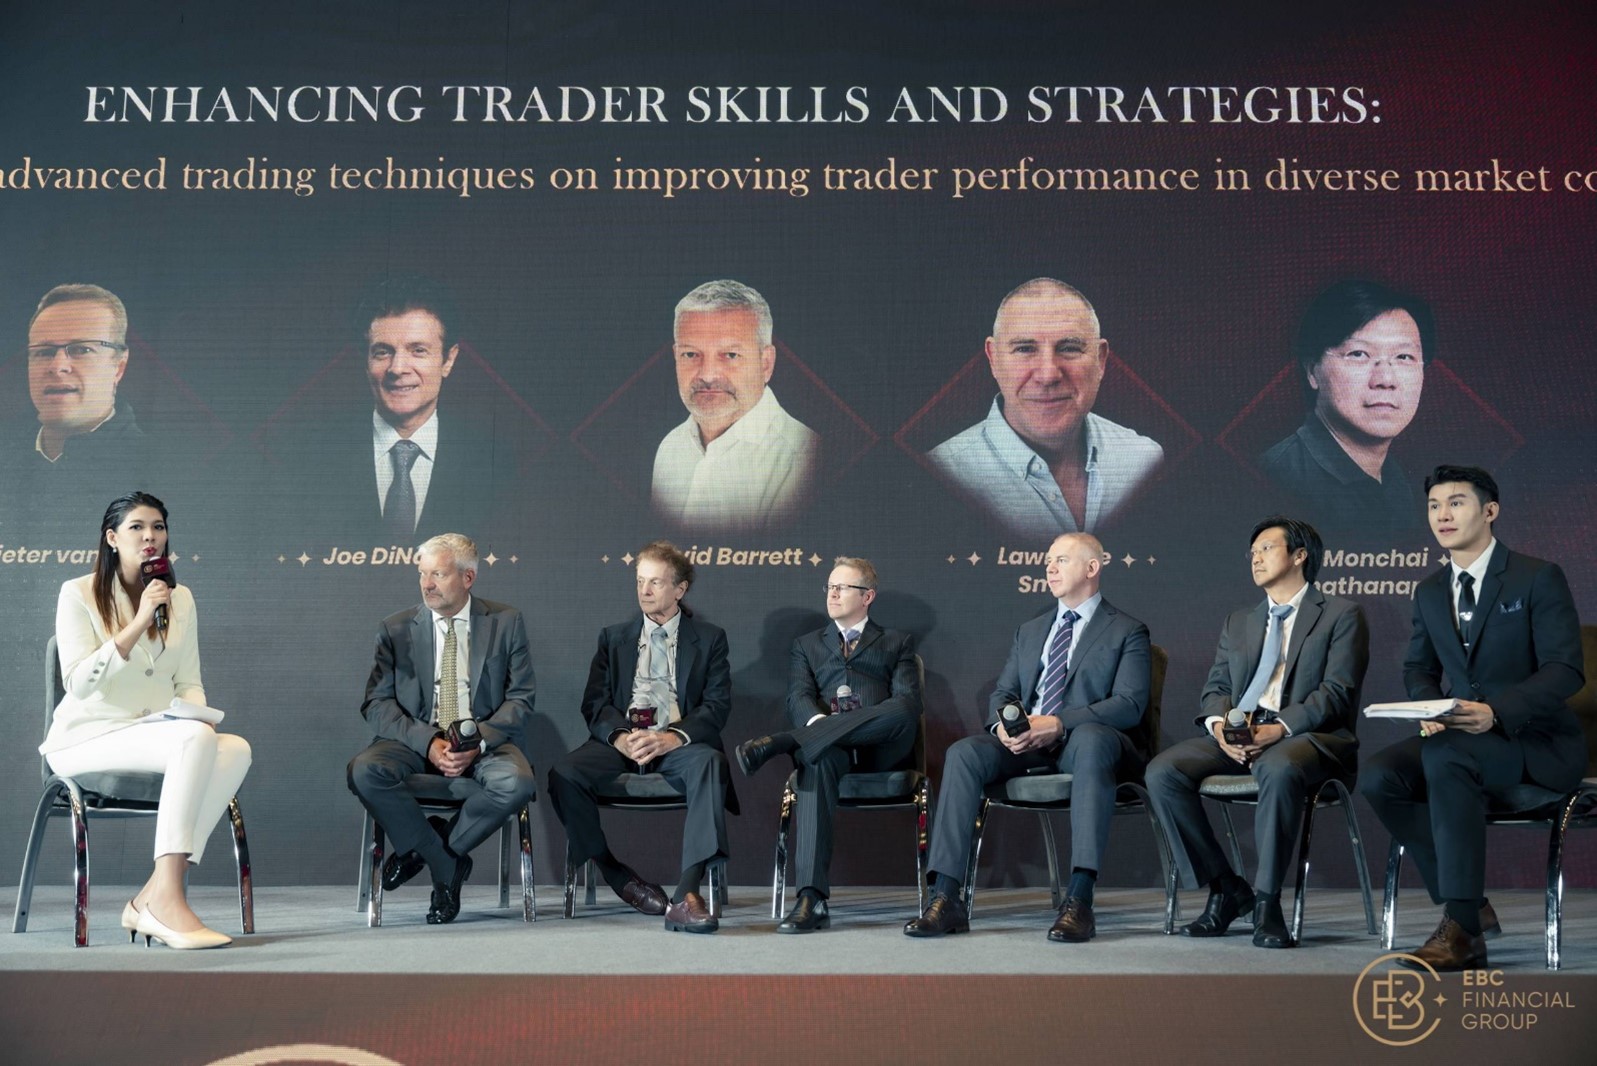 Perbincangan interaktif dengan ahli panel terkenal yang terlibat dengan penonton untuk membincangkan teknik perdagangan profesional dan gelagat pasaran.